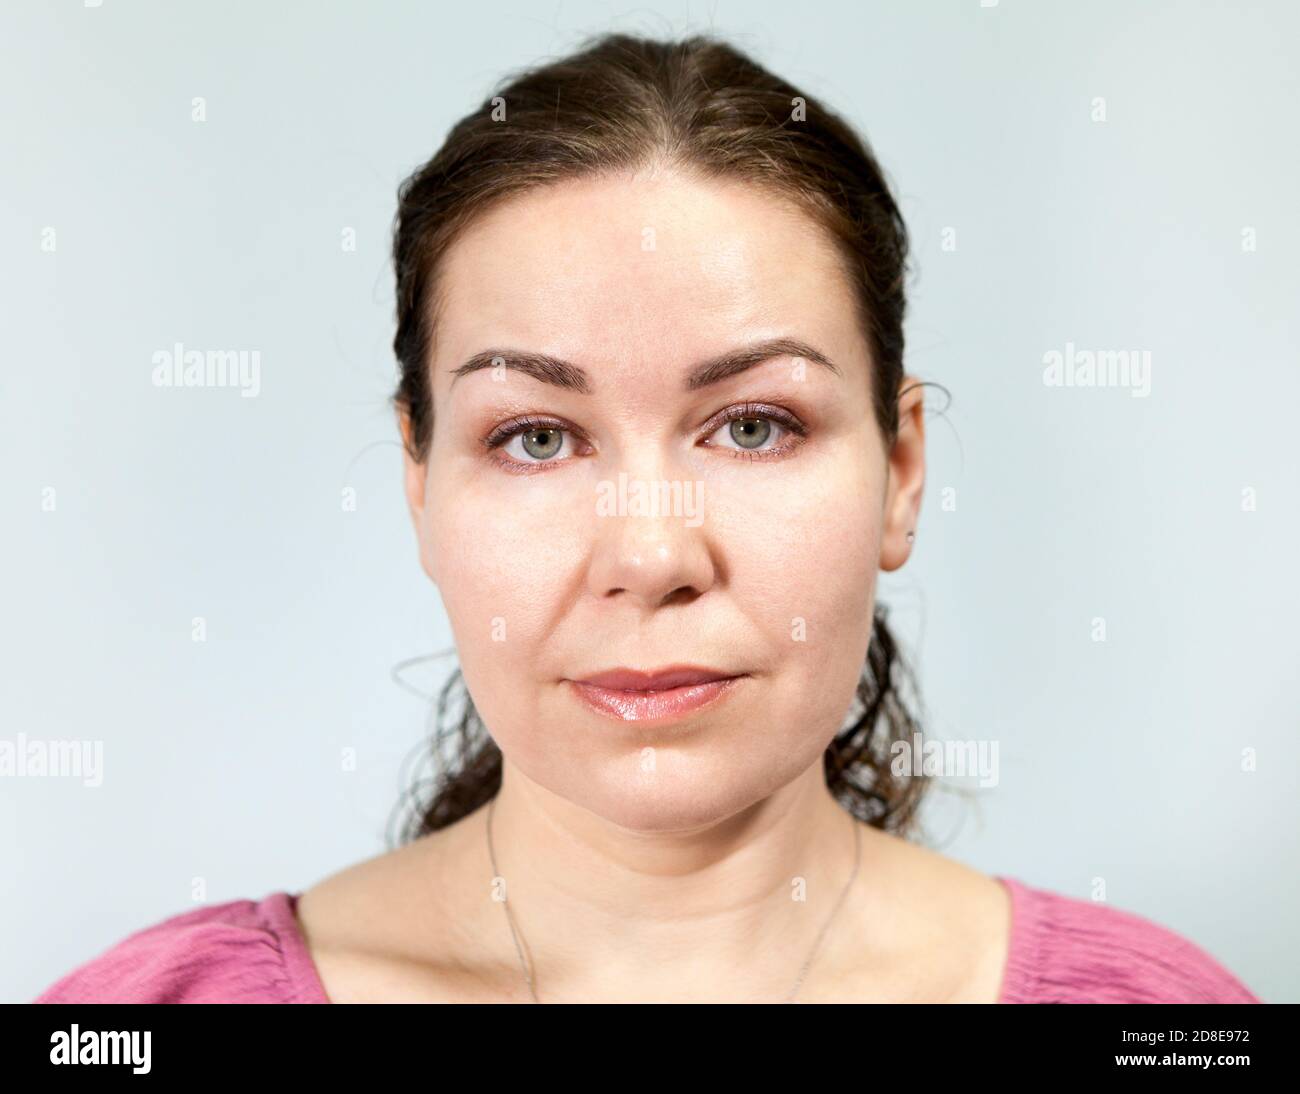 Retrato de una mujer con una expresión neutral, fondo gris, serie de emociones Foto de stock